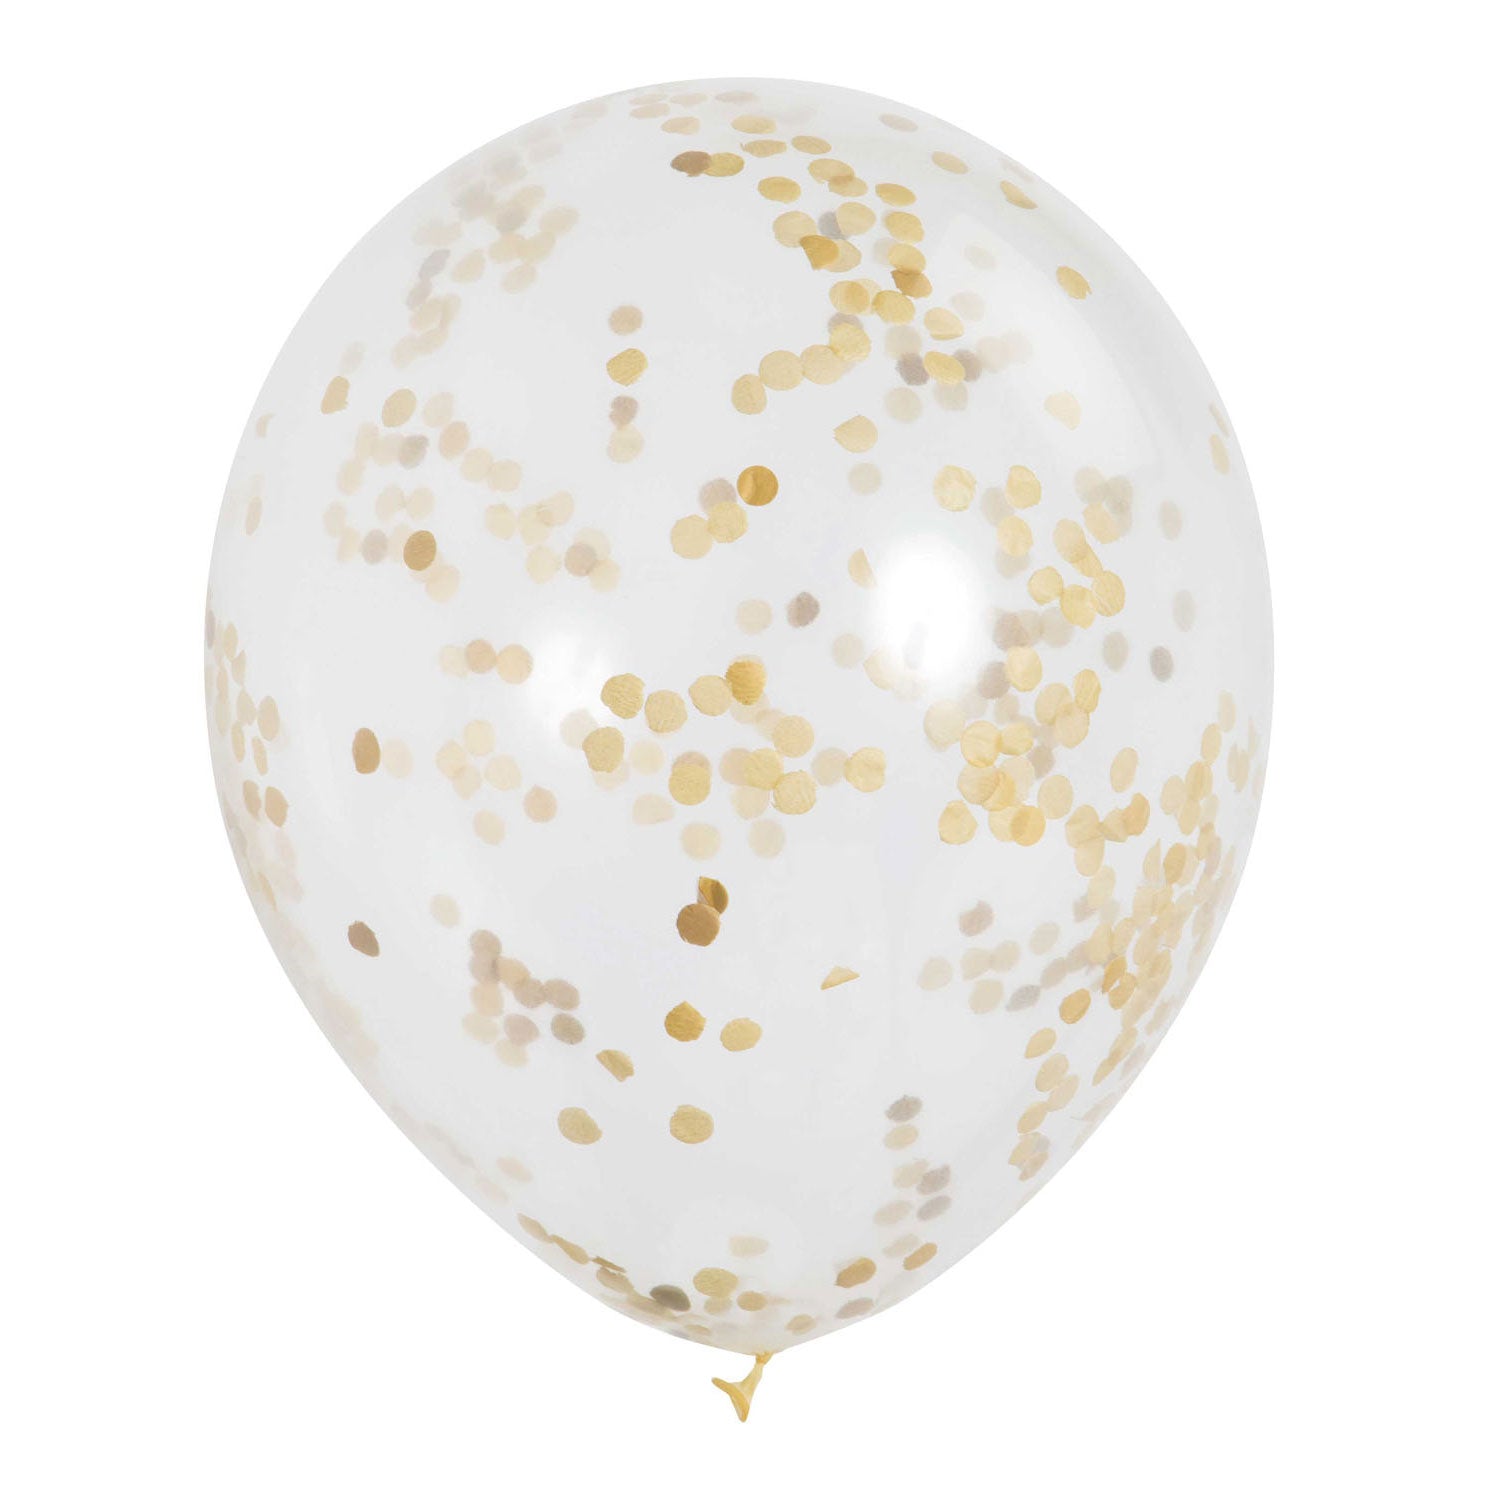 Haza Witbaard Confetti Ballonnen Goud, 6st.